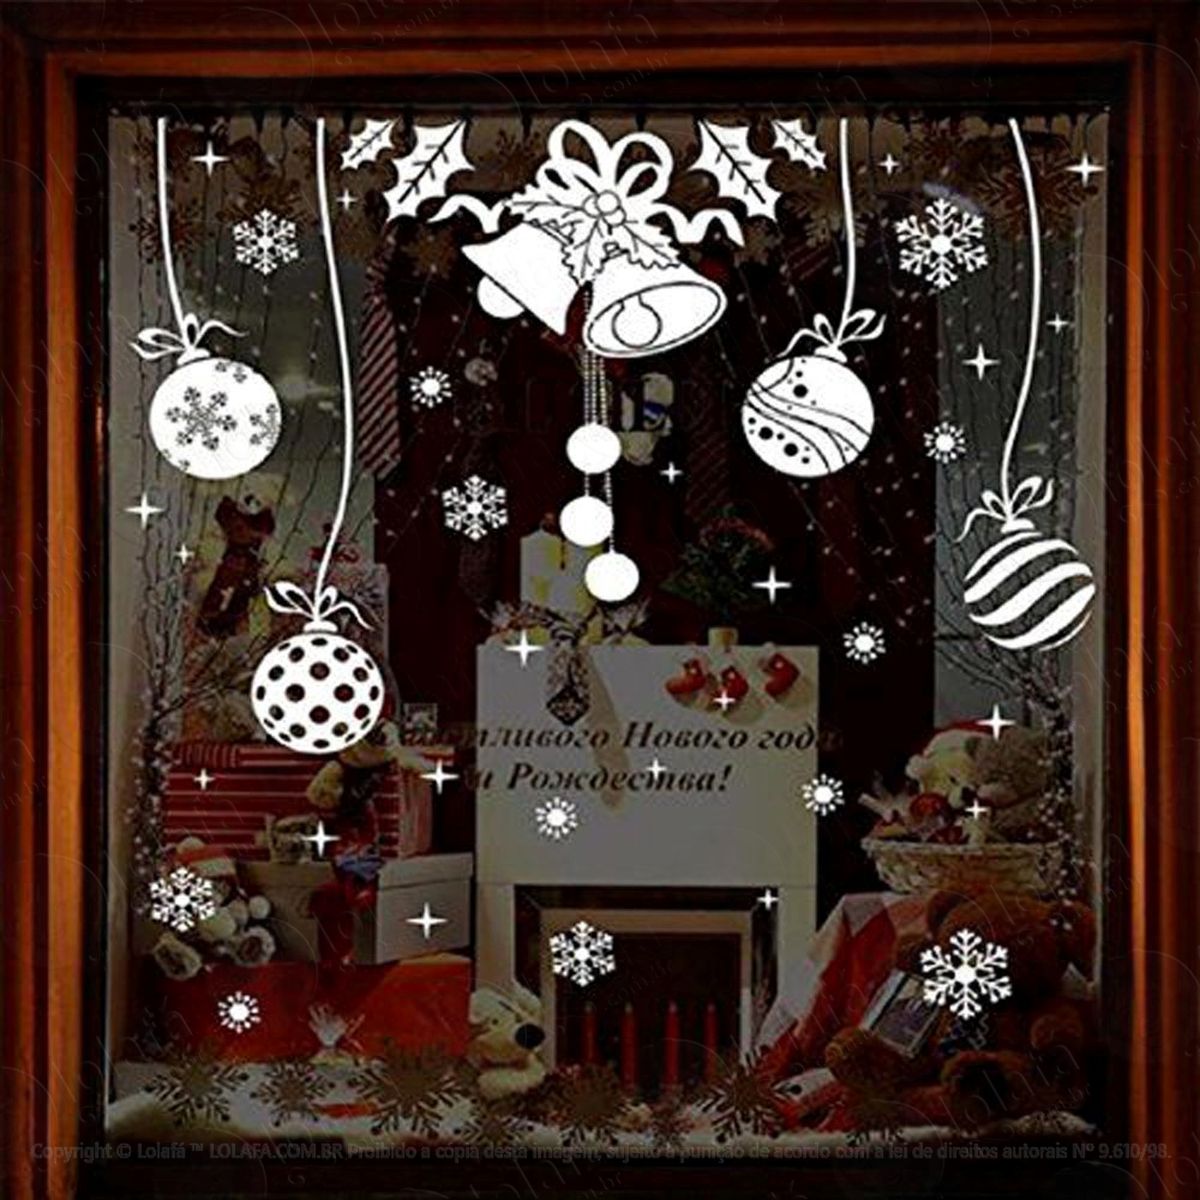 sinos bolas e neve adesivo de natal para vitrine, parede, porta de vidro - decoração natalina mod:306